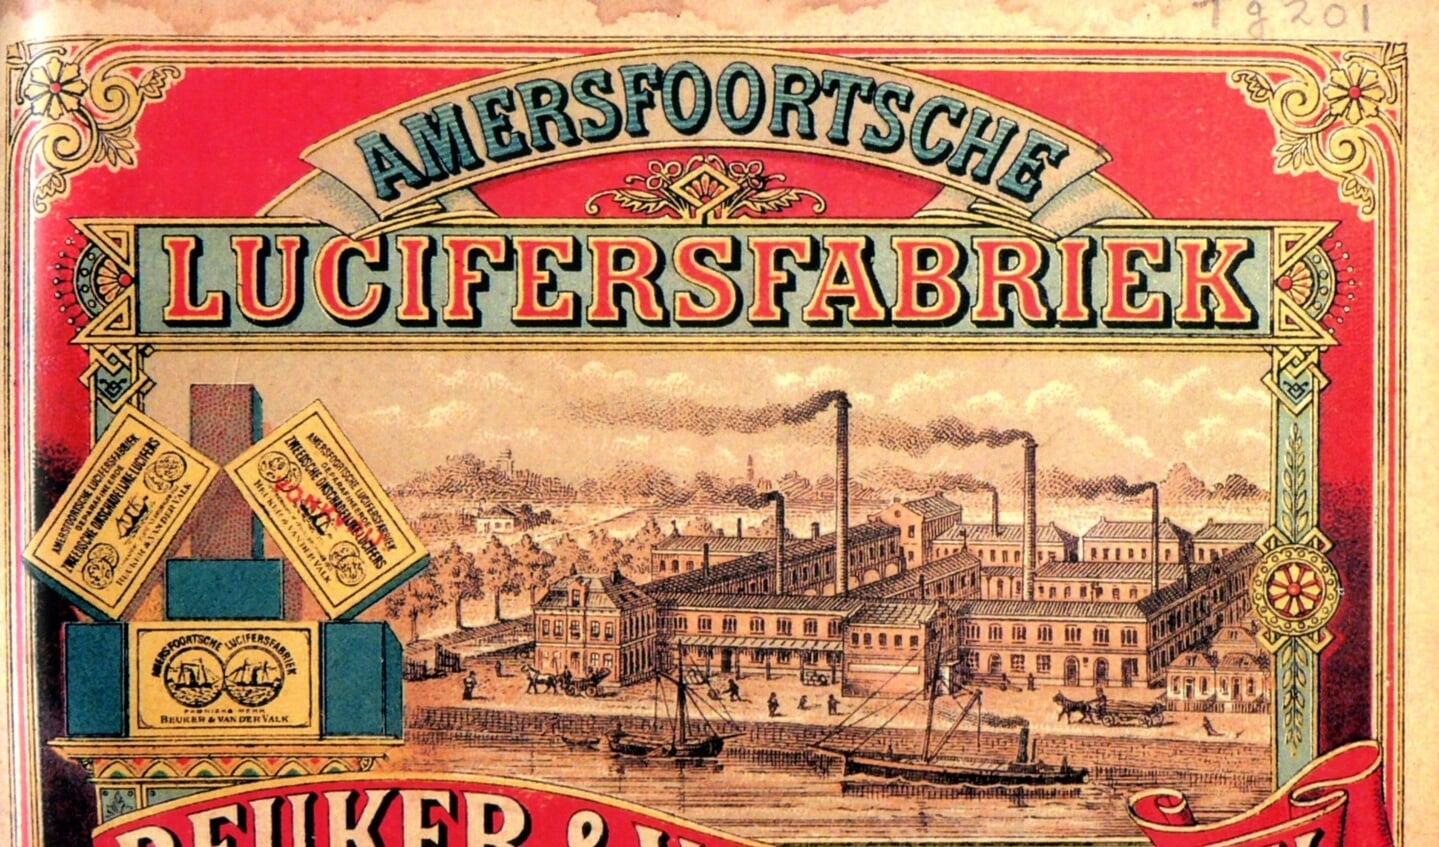 1885 Op het Paketiket van Stoomluciferfabriek Beuker & van der Valk ( later Warner Jenkinson) wordt een enorm fabriekscomplex afgebeeld met vele schoorstenen